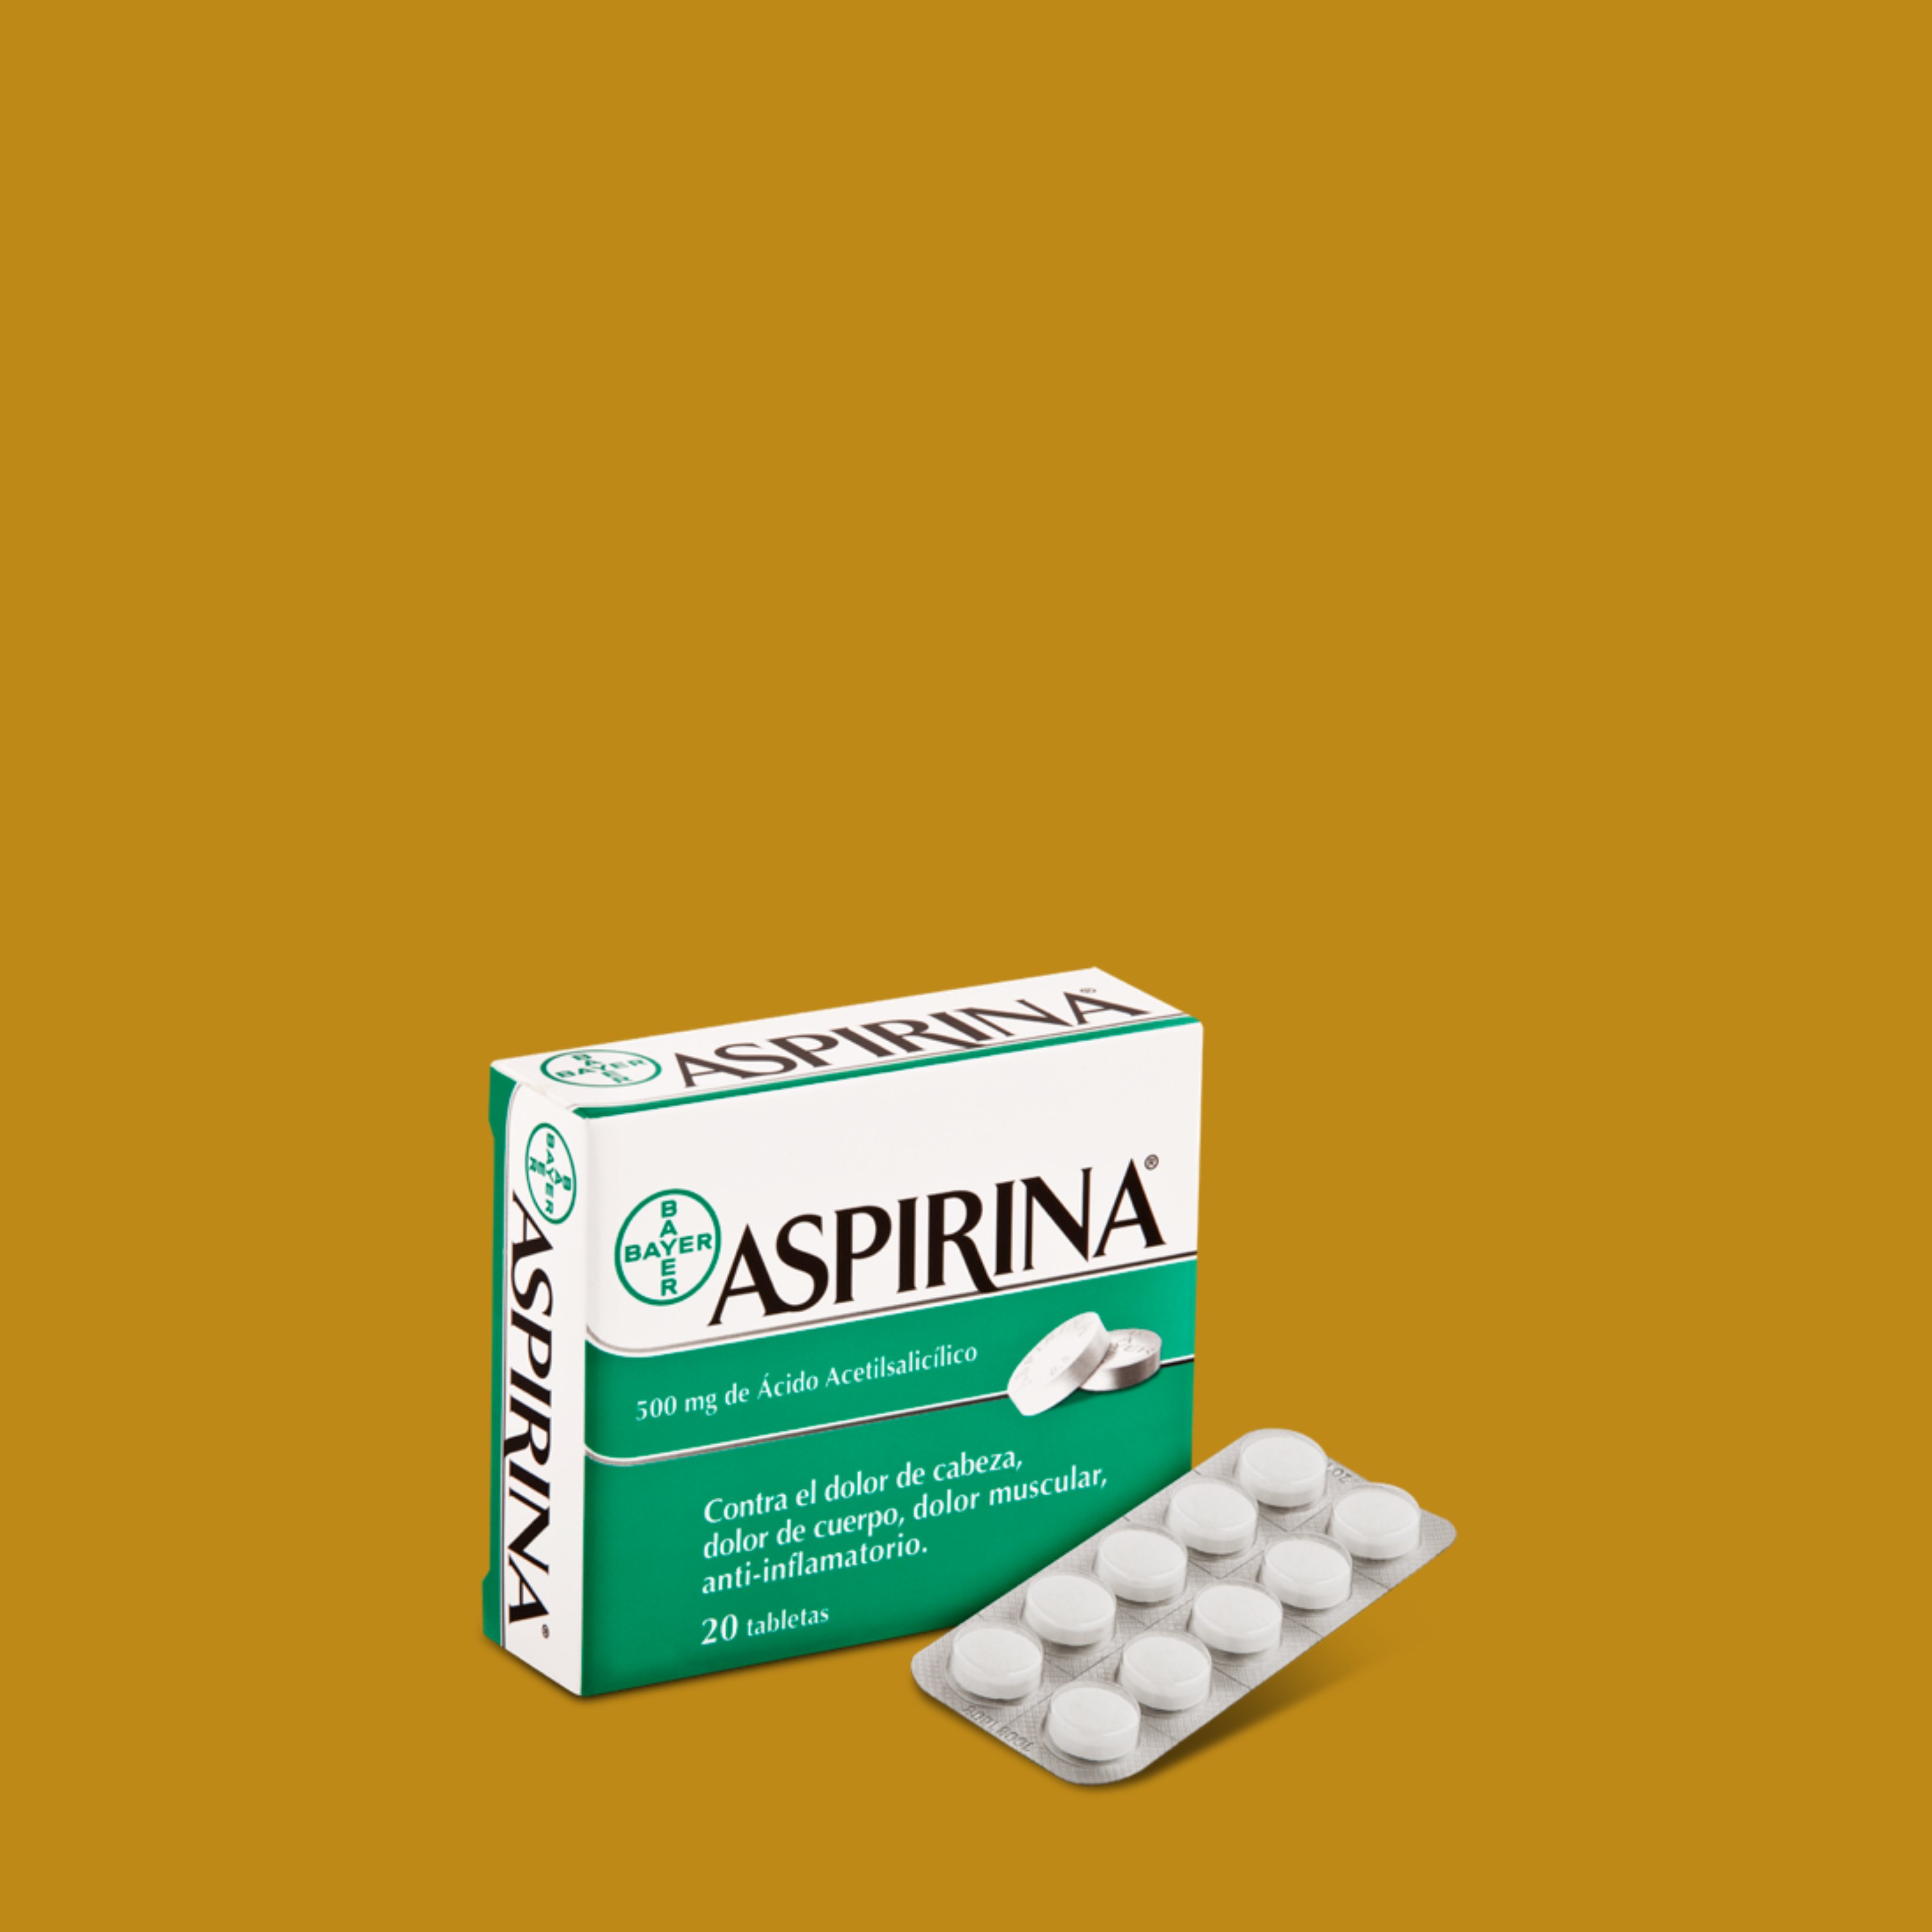 La ciencia desmiente una creencia arraigada sobre la aspirina